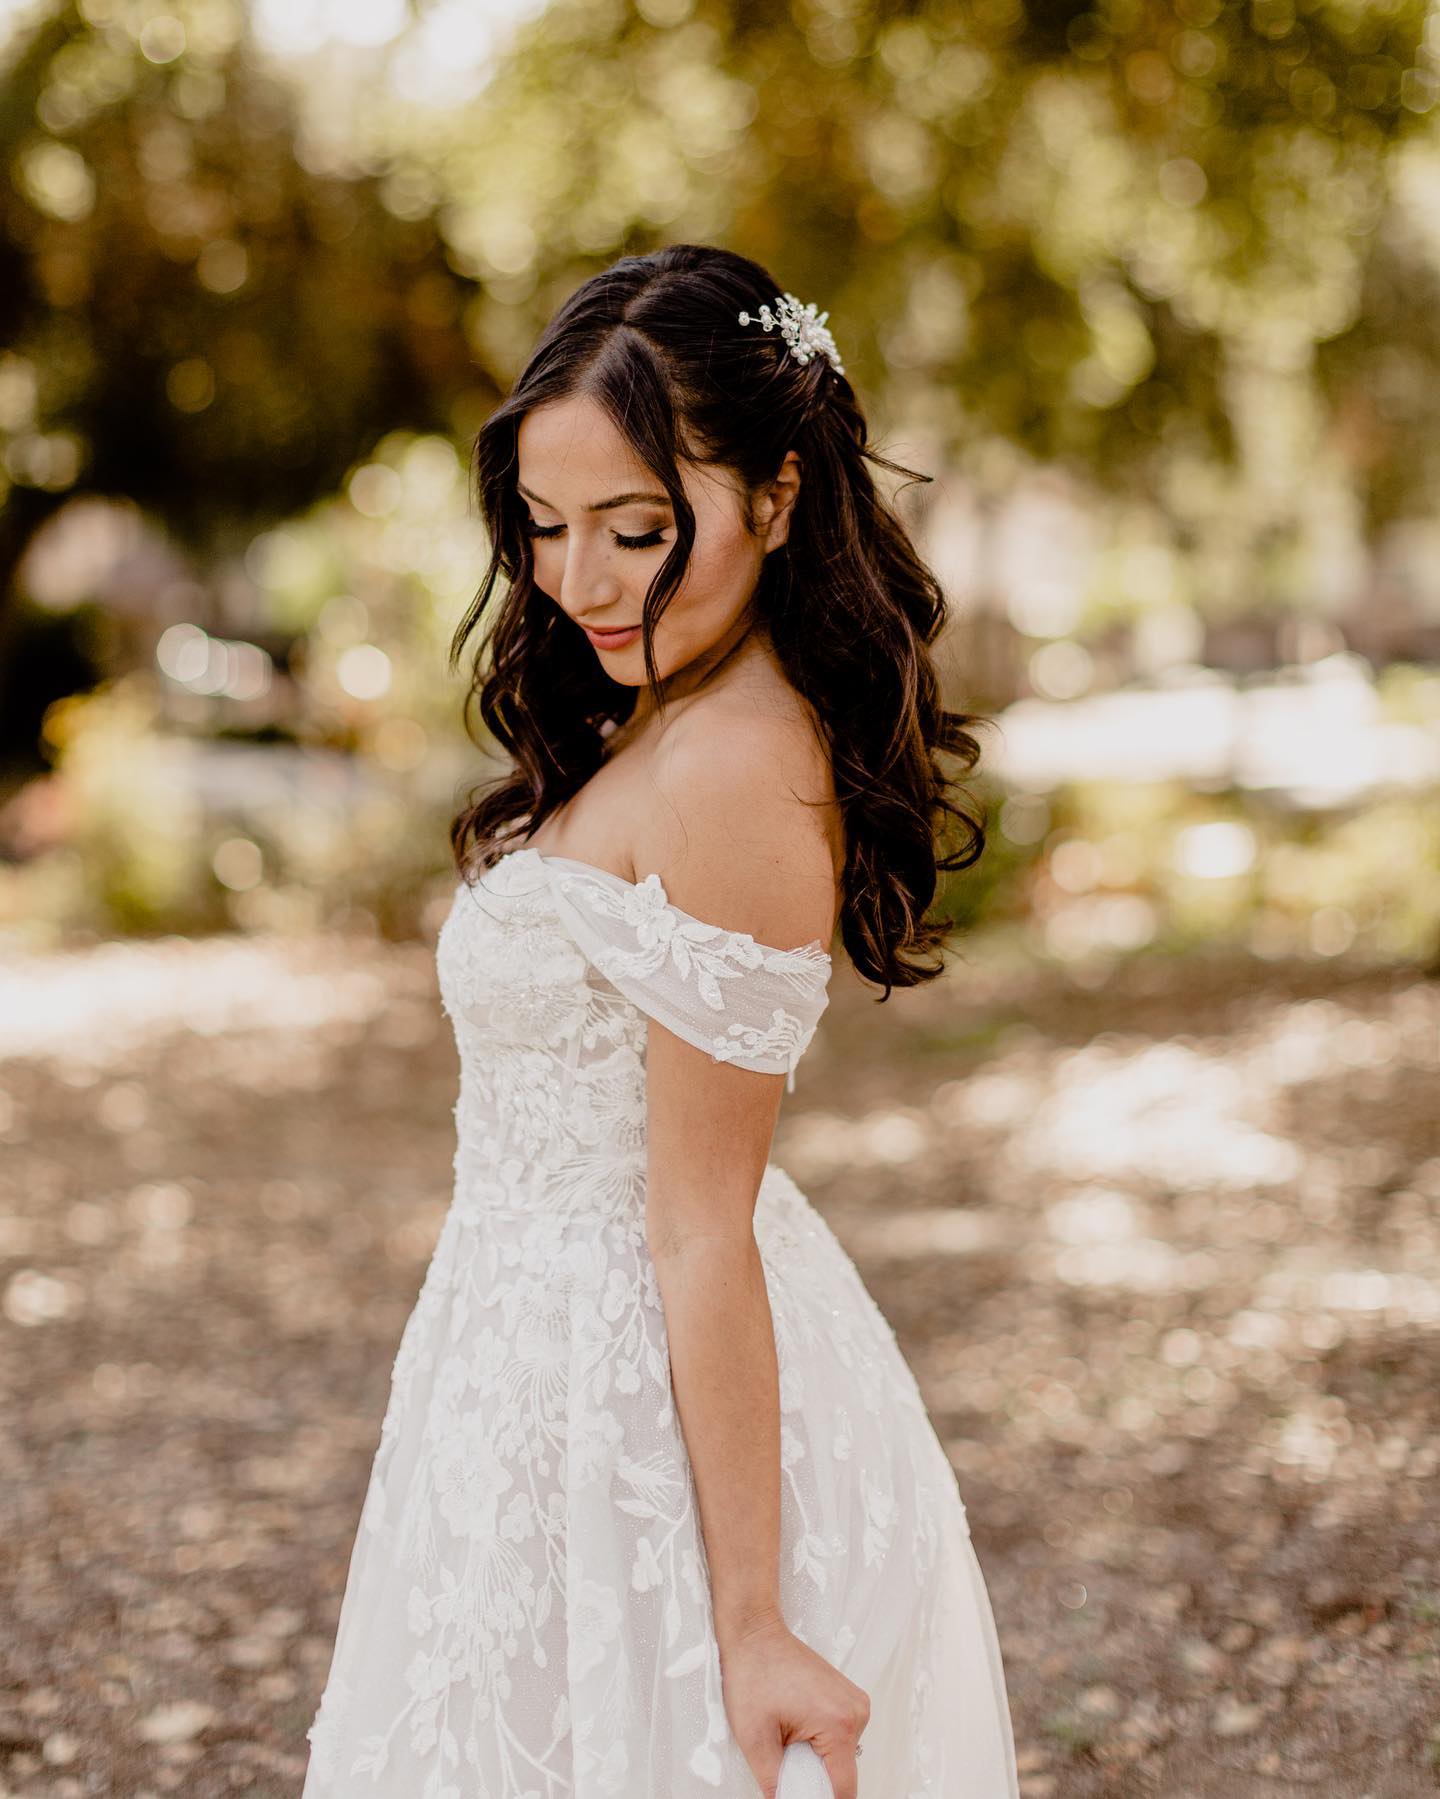 How To Customize Your Wedding Dress | David's Bridal Blog